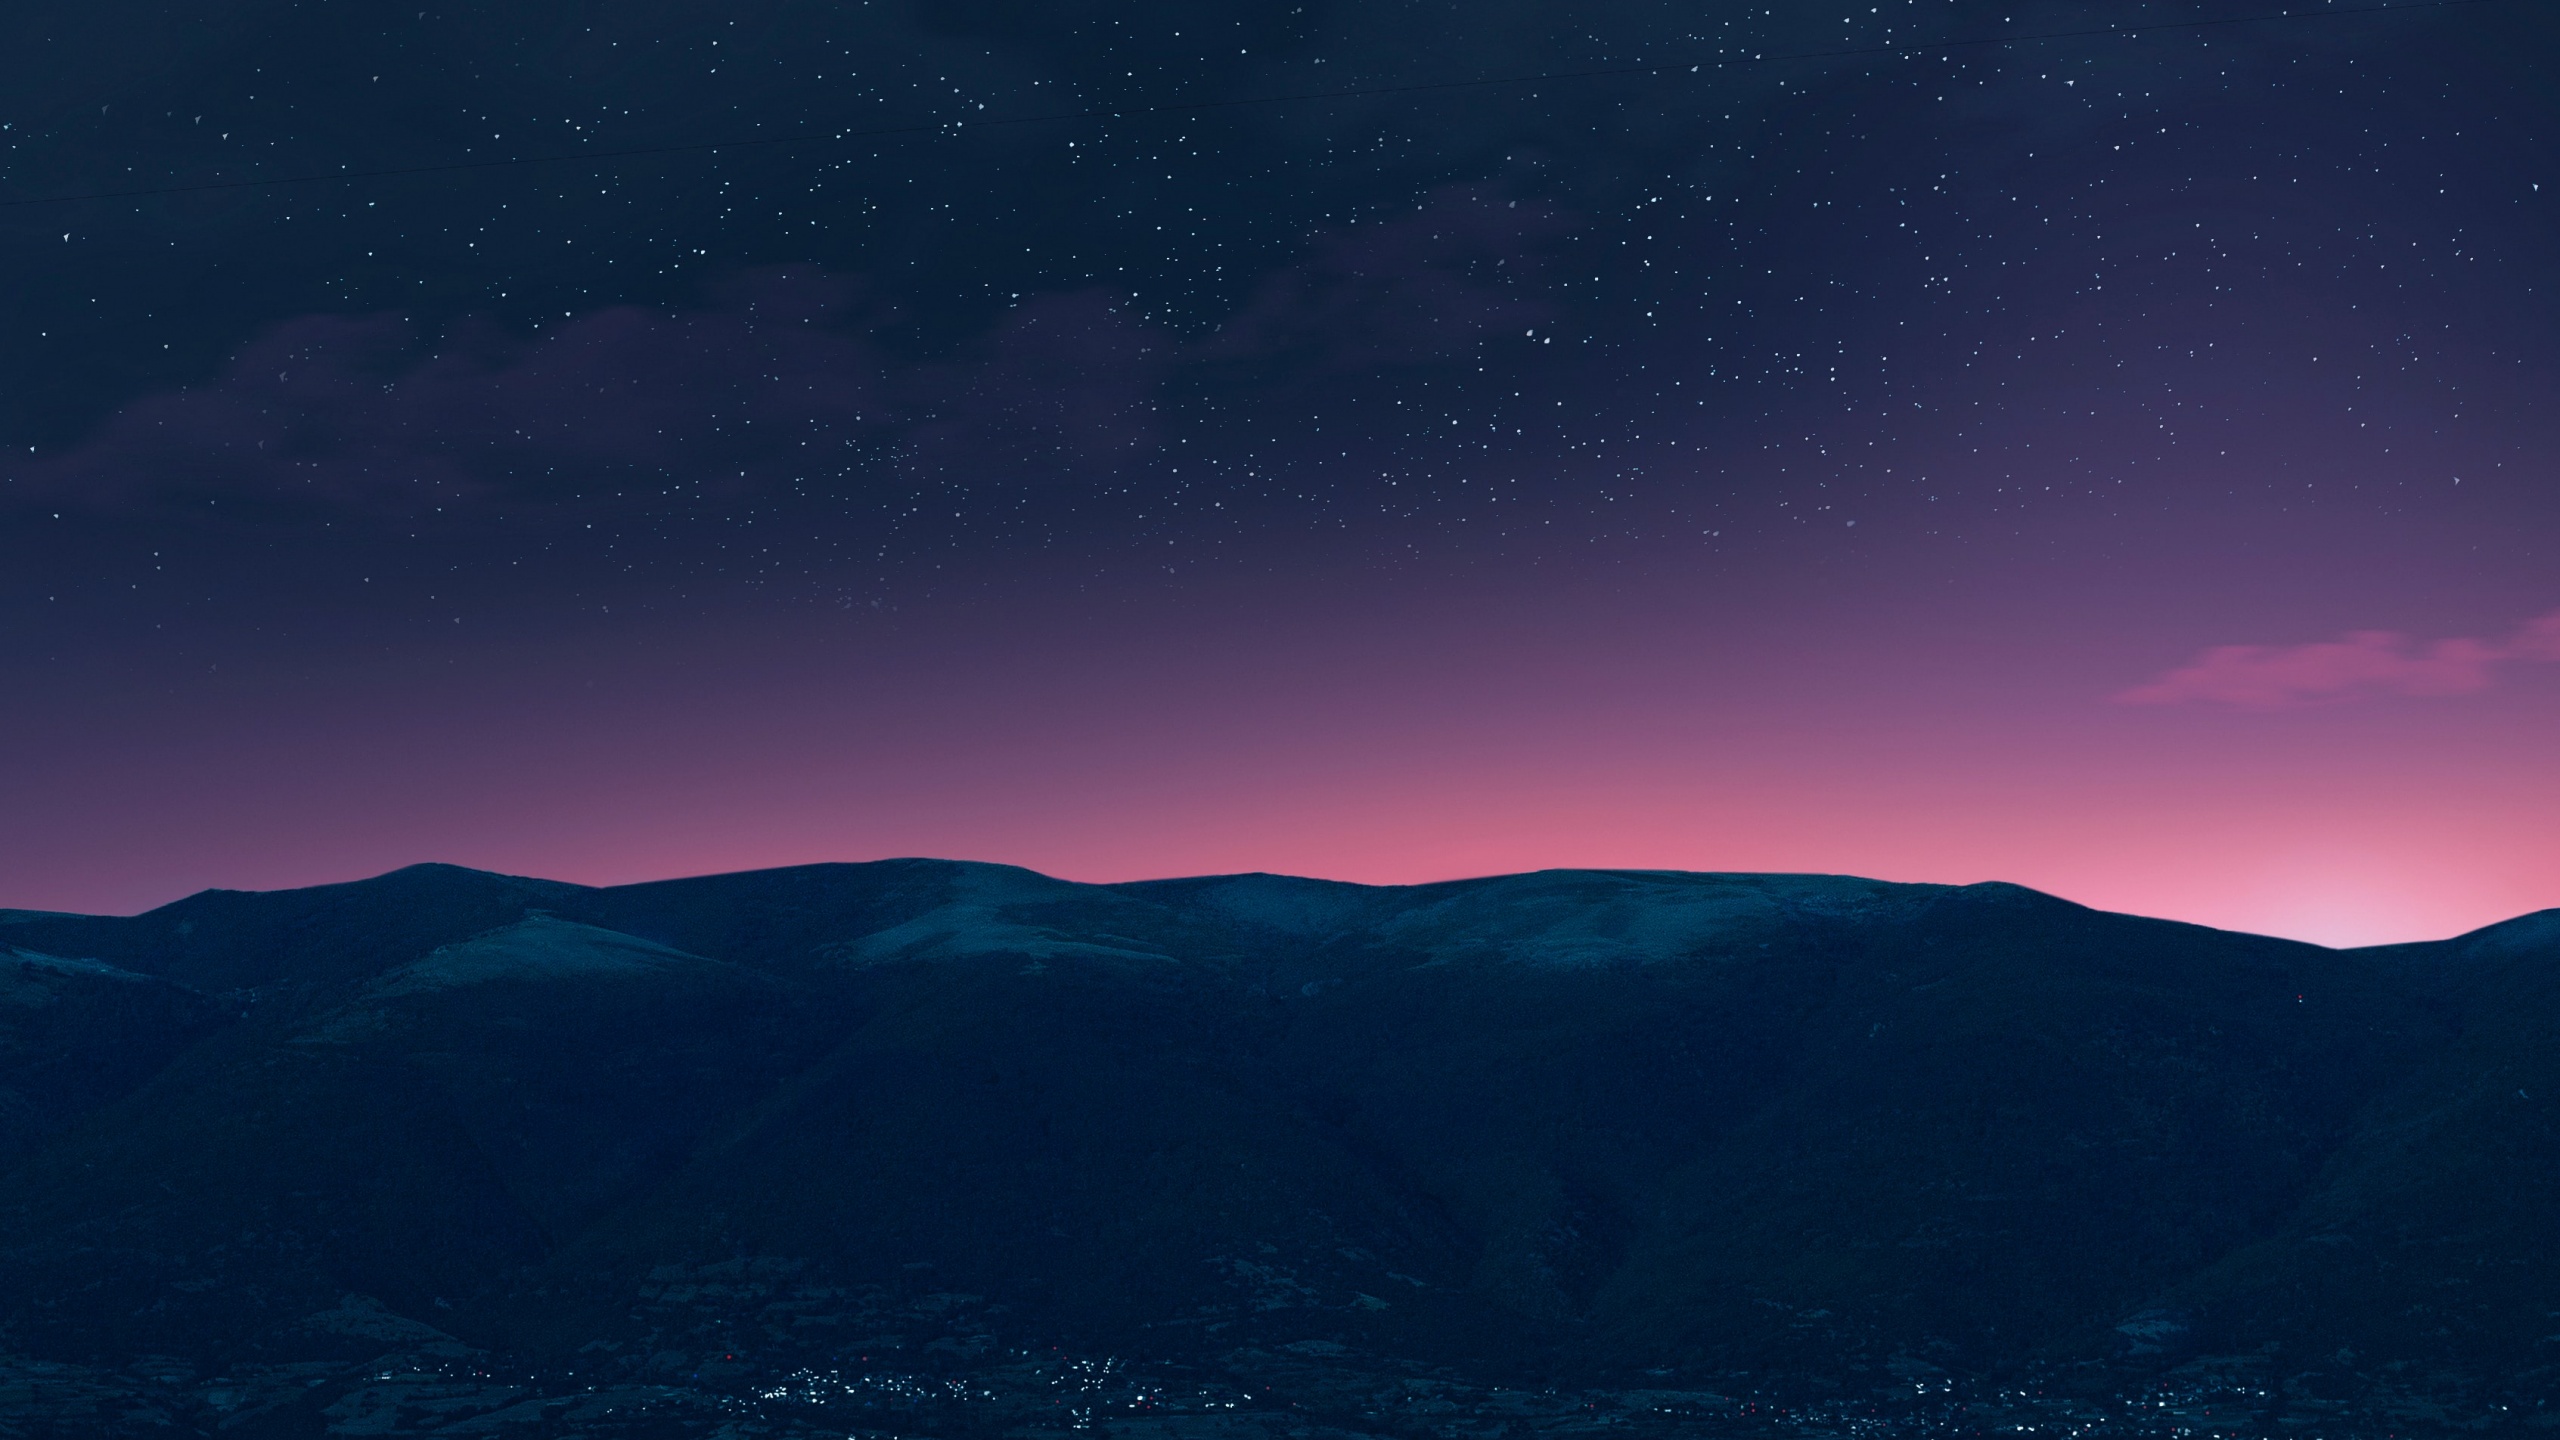 Phông nền núi non đen trắng, bầu trời đêm sao và thiên nhiên với độ phân giải 4K chắc chắn sẽ làm bạn say mê. Cùng với những đường nét uốn khúc của núi non và sự cân bằng hoàn hảo giữa ánh sáng và bóng tối, bức ảnh sẽ khiến bạn không thể rời mắt.